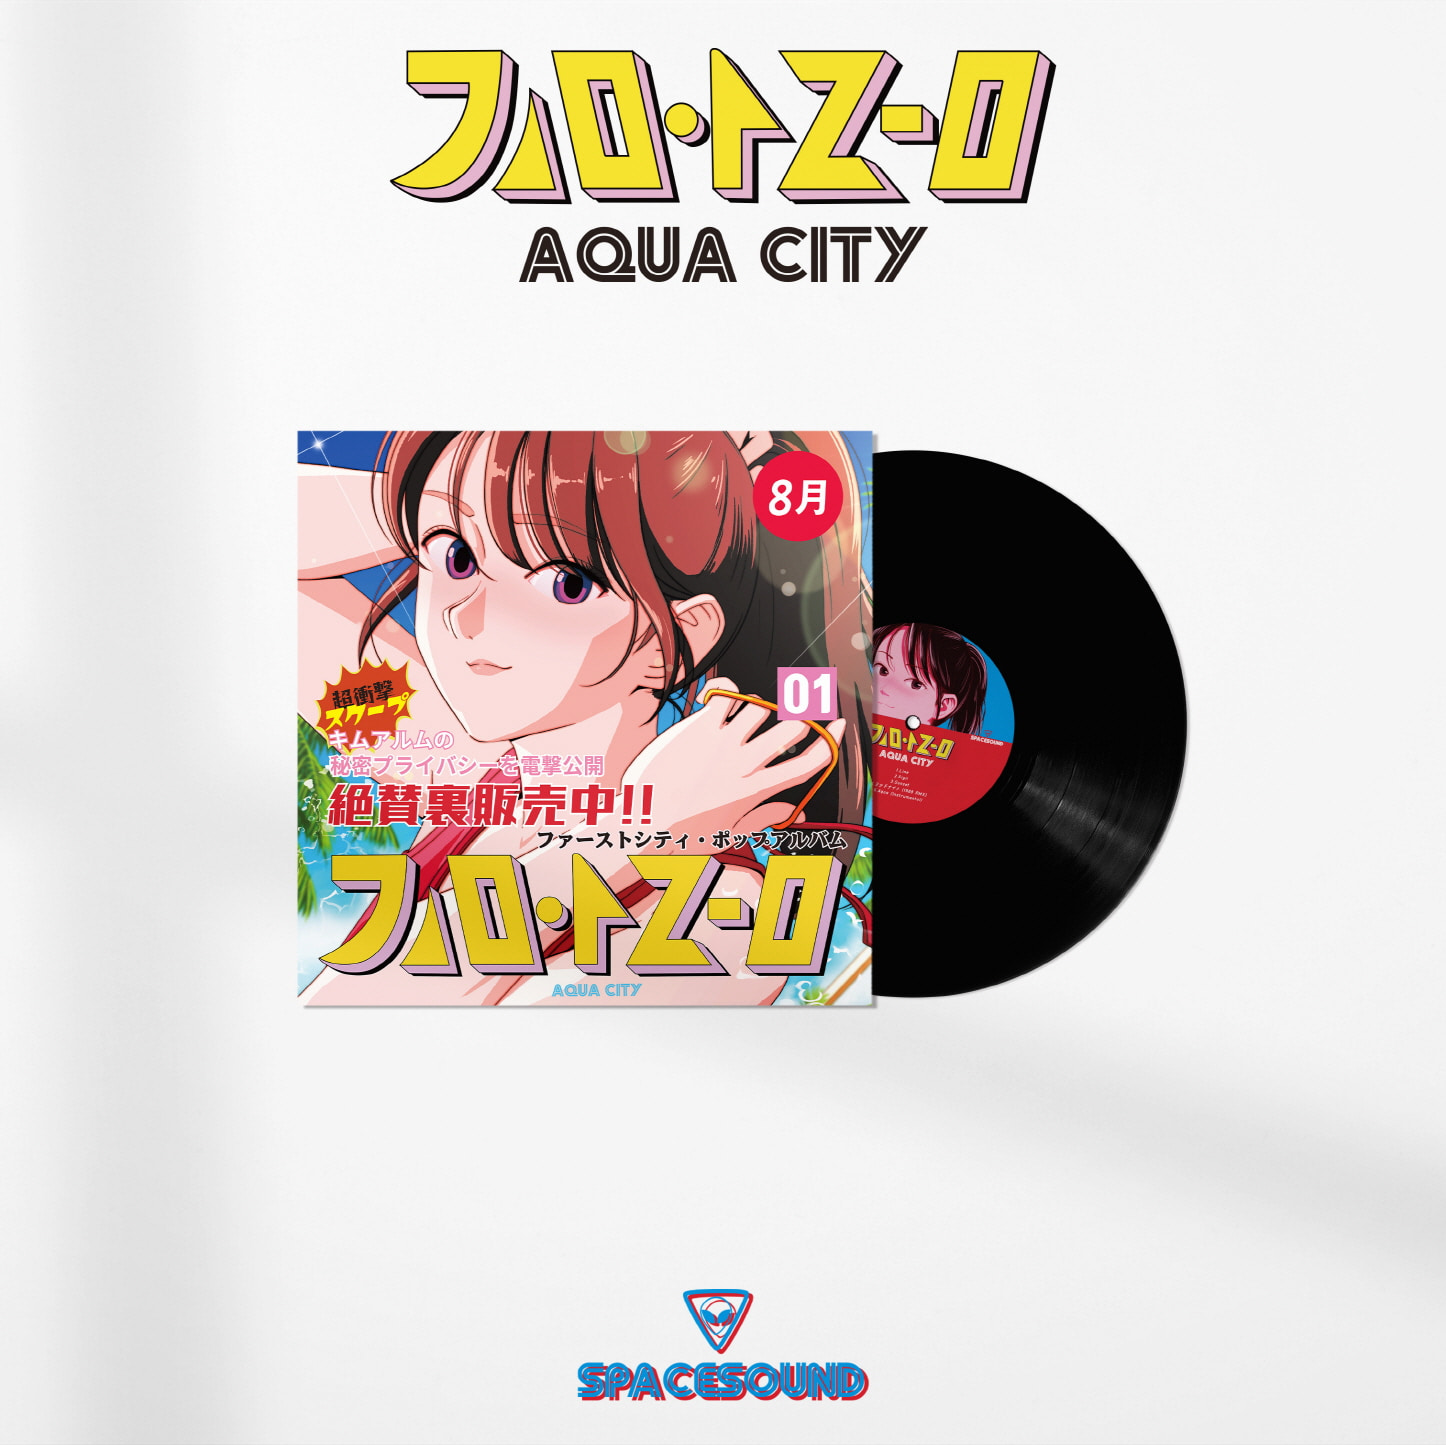 예약판매[PRE-ORDER] 김아름 - AQUA CITY (Japanese ver.) [LP]